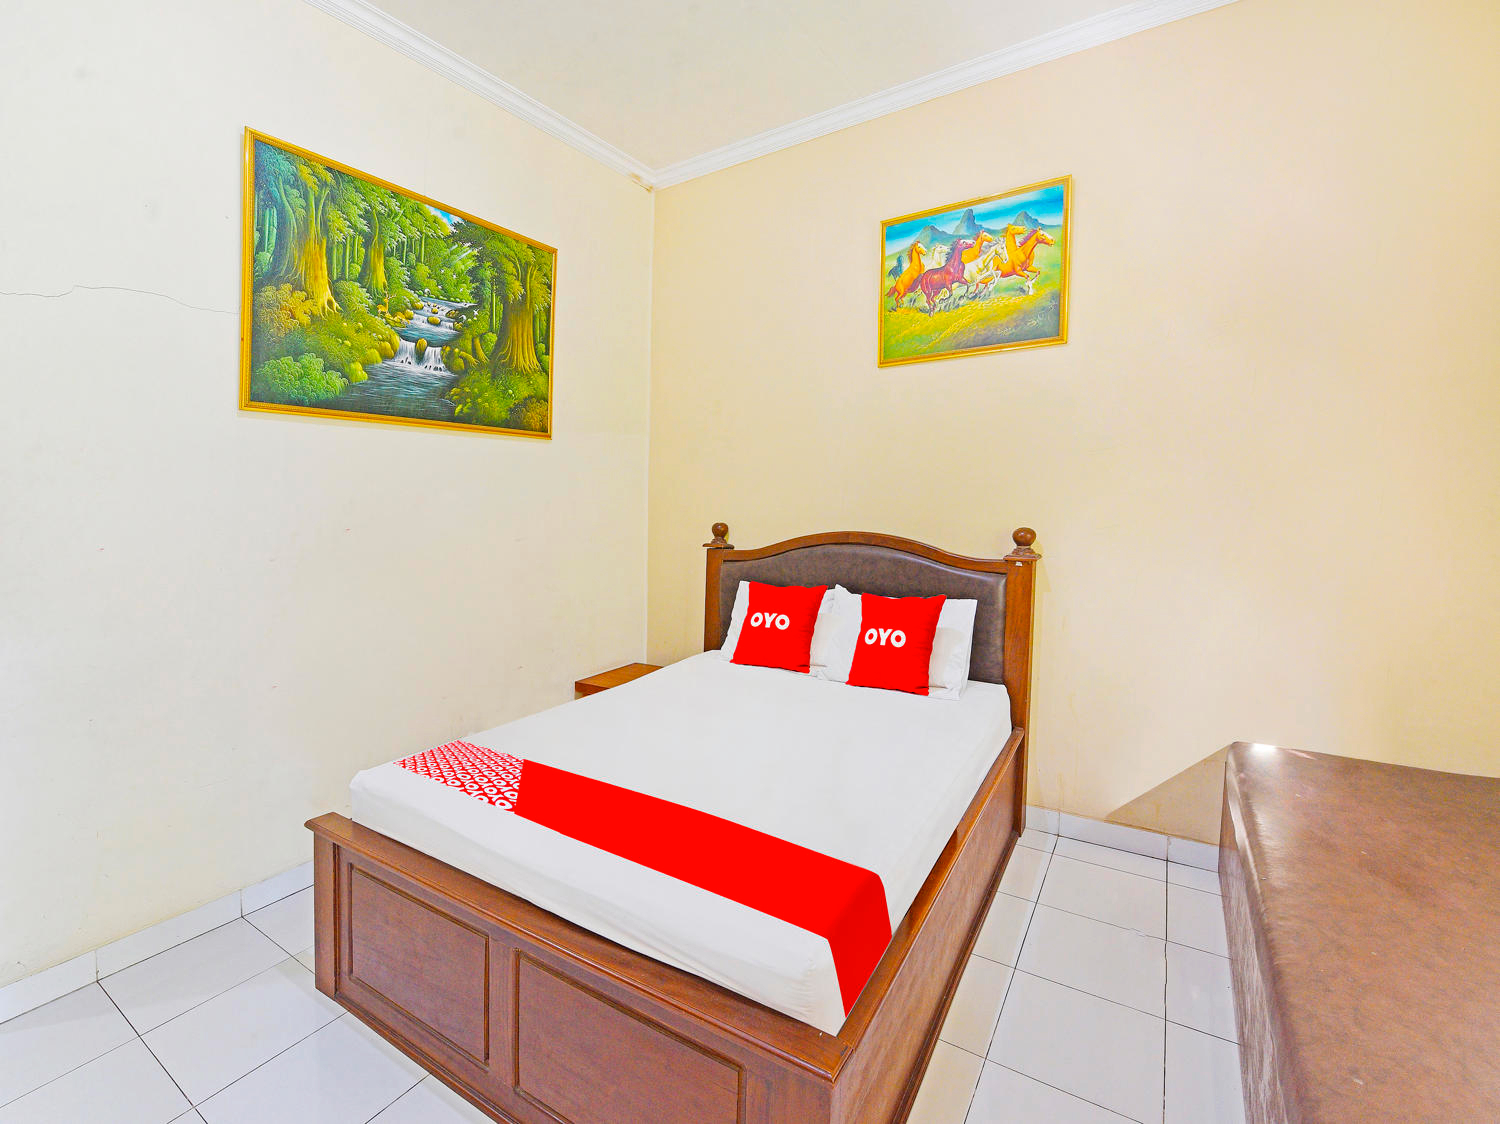 Bedroom 1, Capital O 91406 Agus Jaya Residence, Denpasar